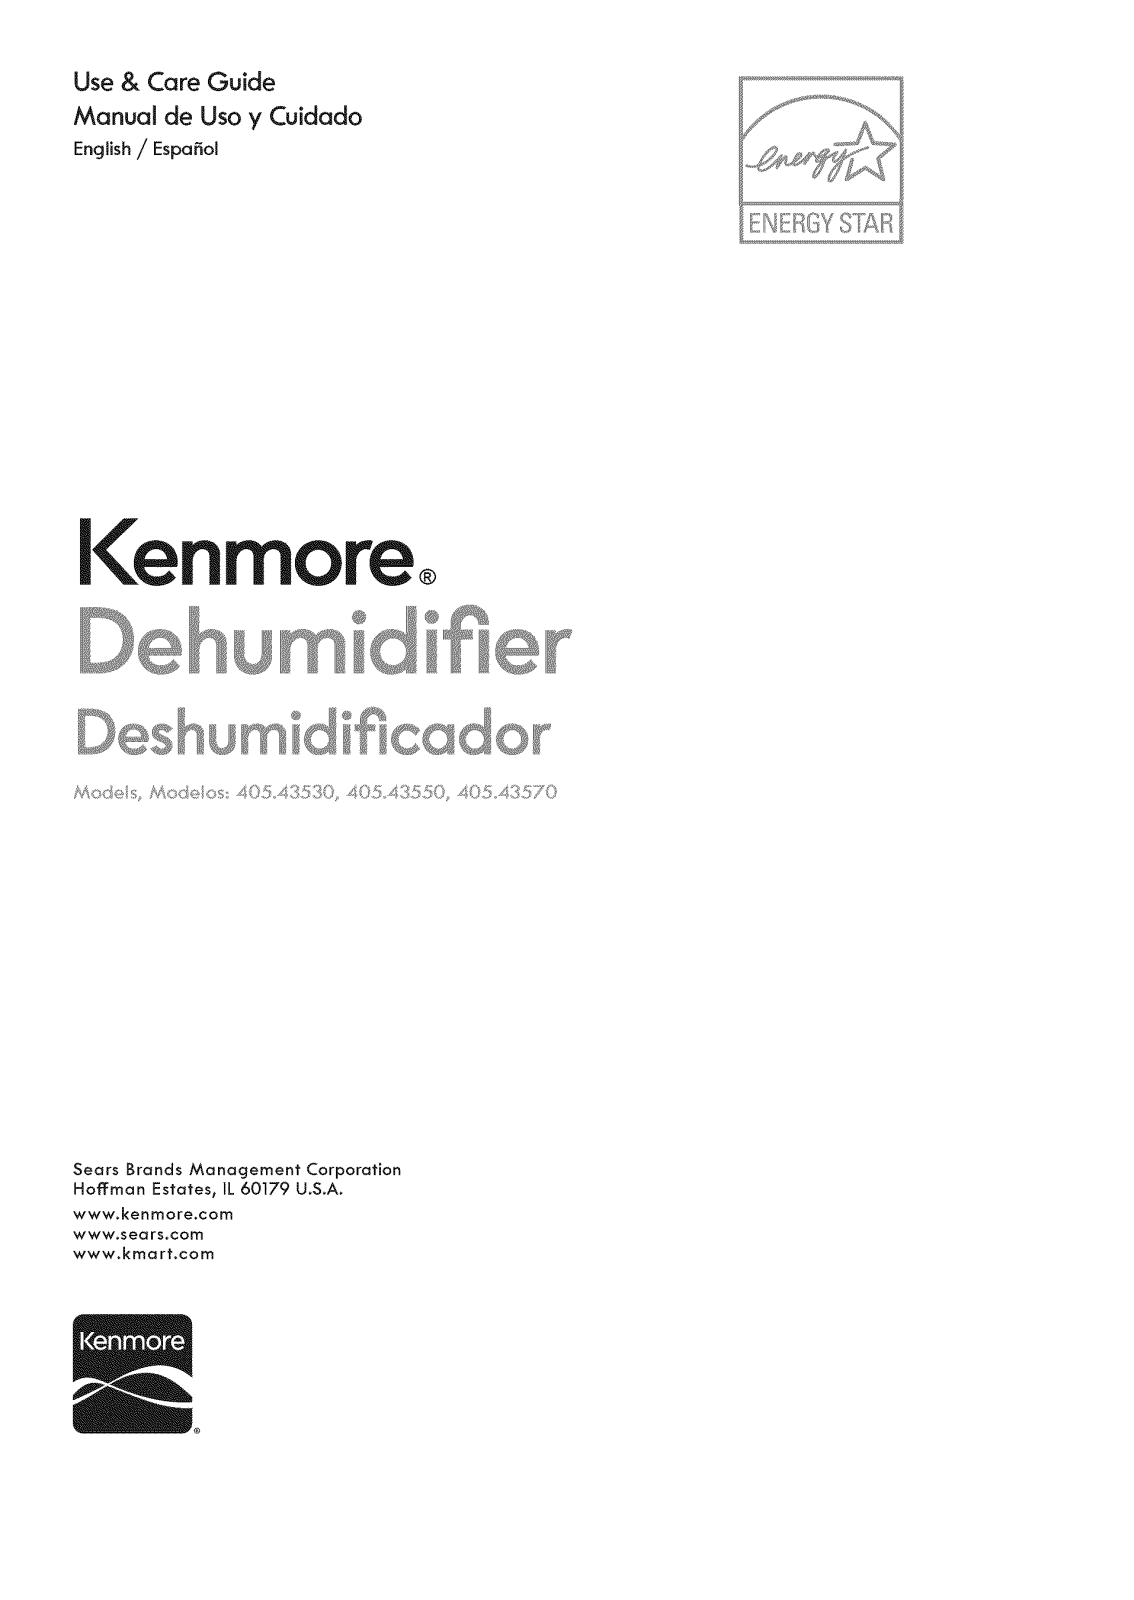 Kenmore 40543570, 40543550, 40543530 Owner’s Manual